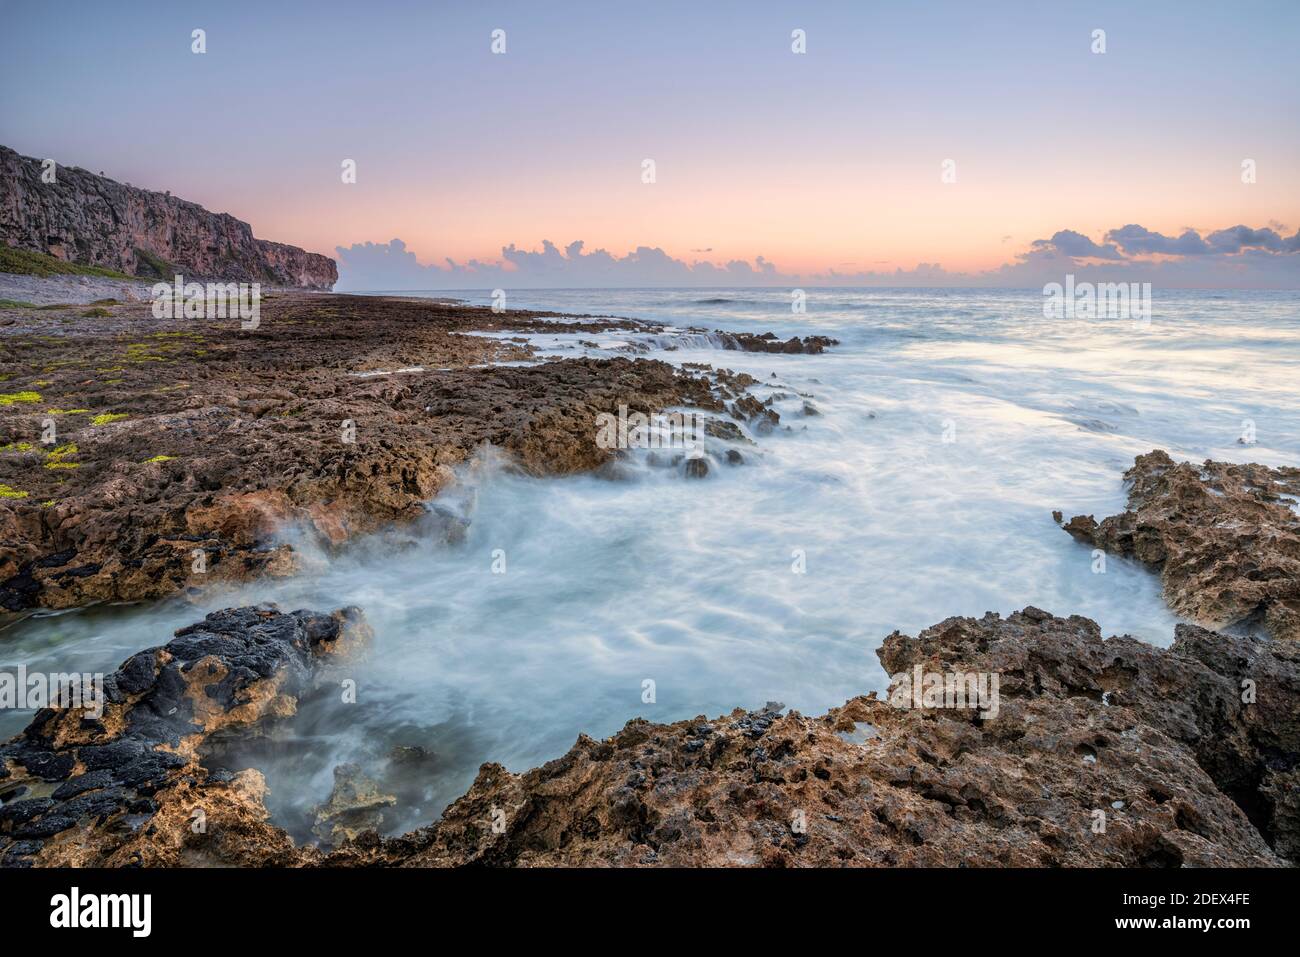 Geographie / Reisen, Sonnenaufgang in der Pollard Bay auf der Karibikinsel Cayman Brac auf der Cayman Insel, Additional-Rights-Clearance-Info-not-available Stockfoto